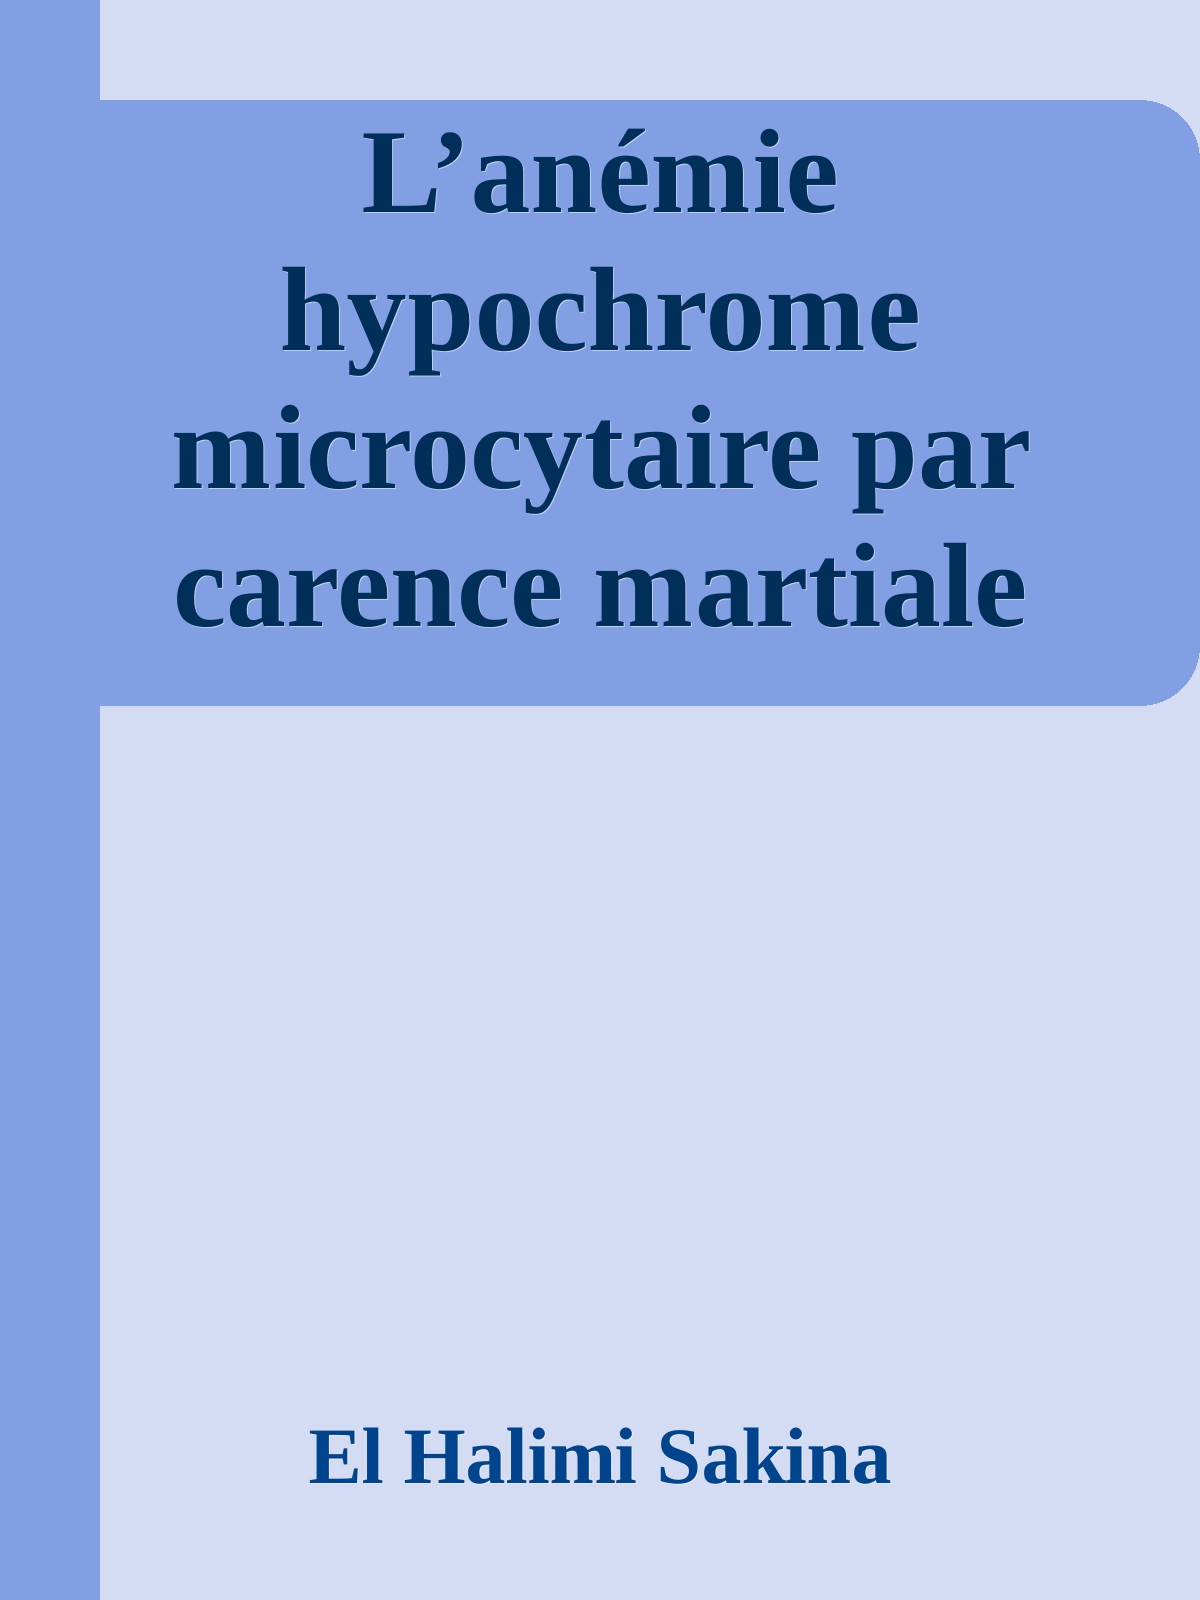 L’anémie hypochrome microcytaire par carence martiale